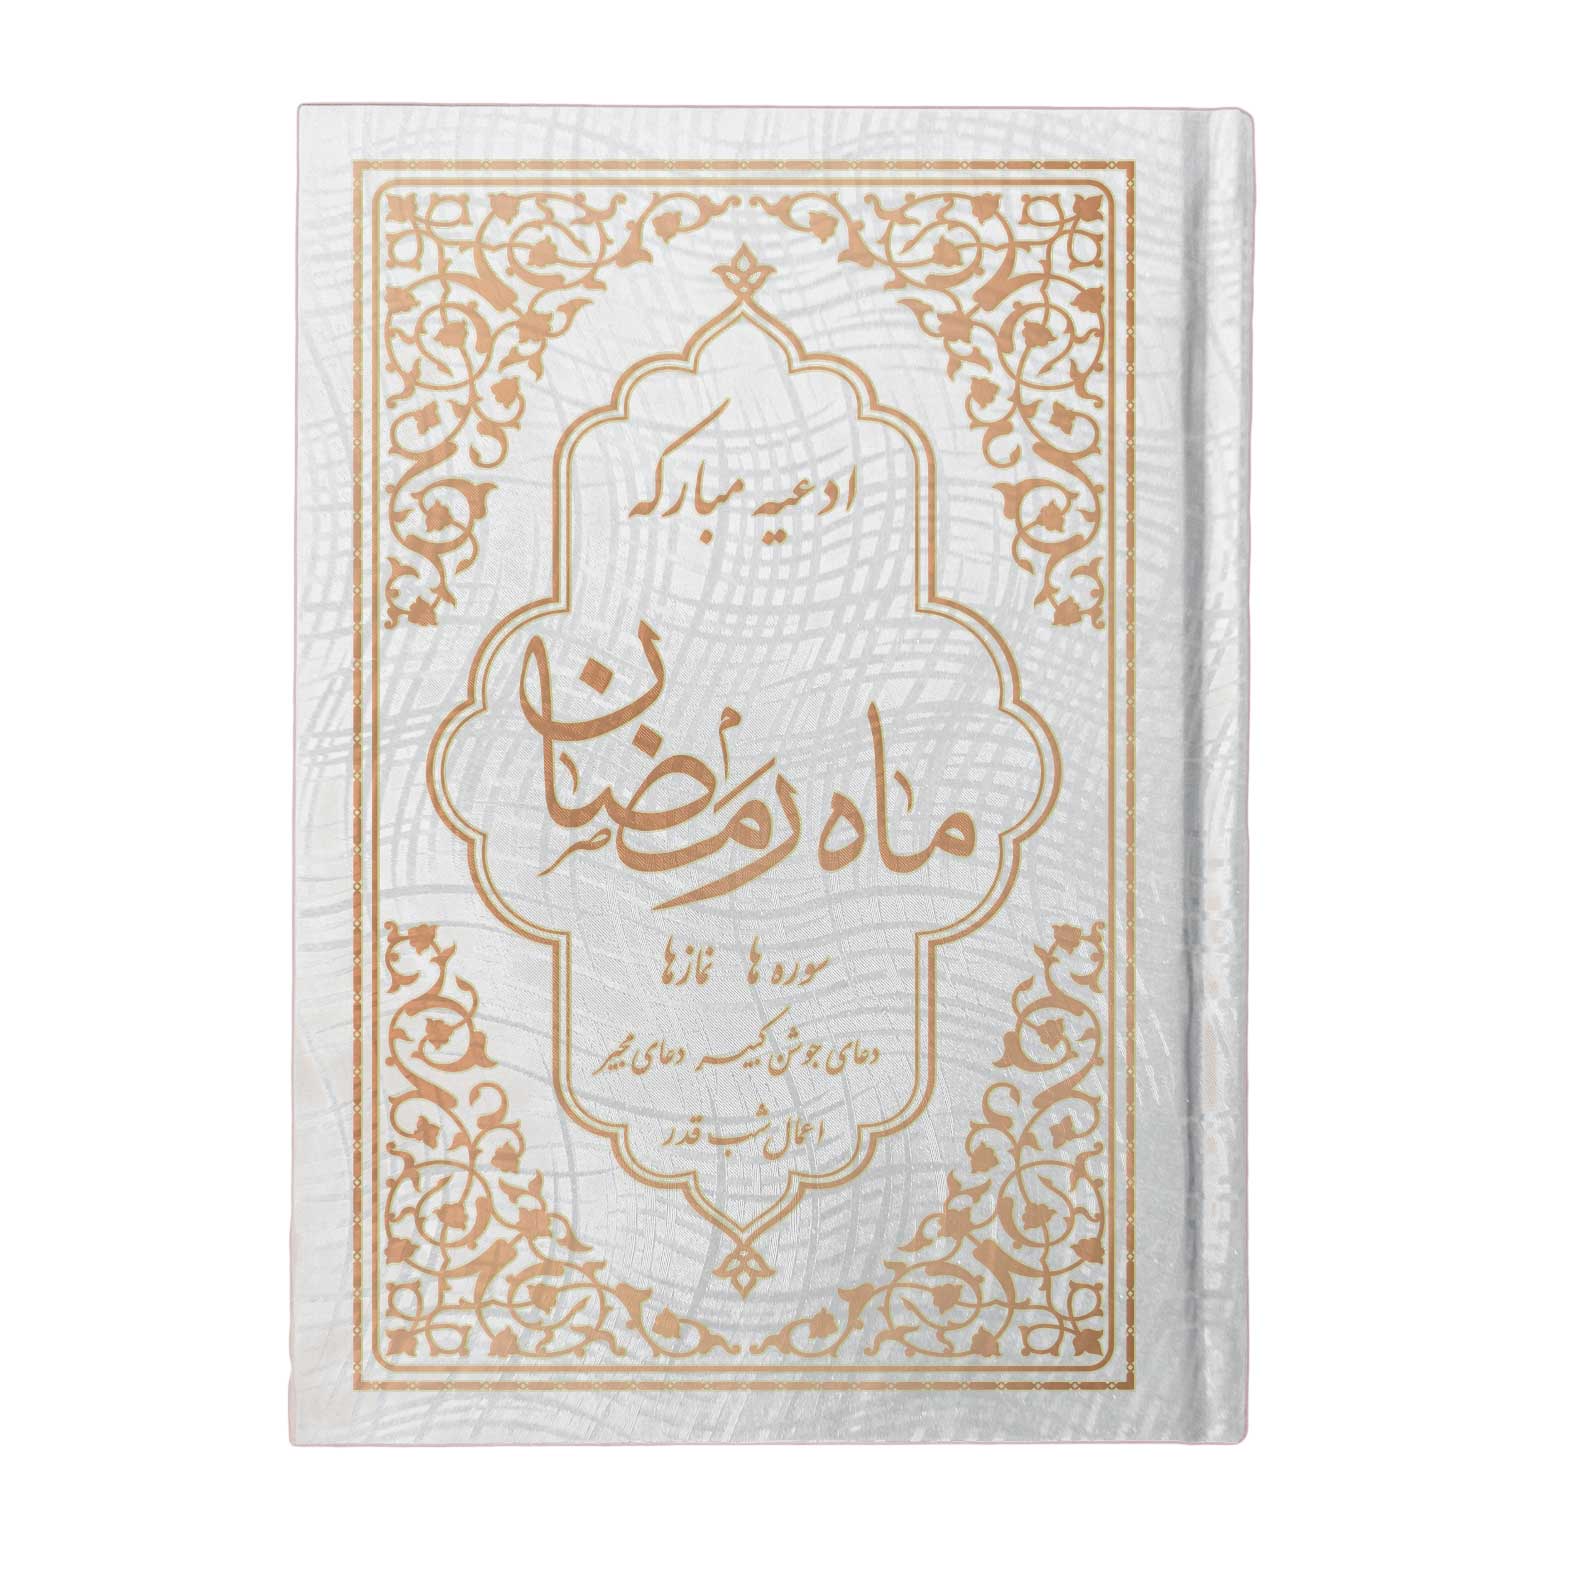 کتاب ادعیه مبارکه ماه رمضان همراه با دعای جوشن کبیر، مجیر و اعمال شب قدر)